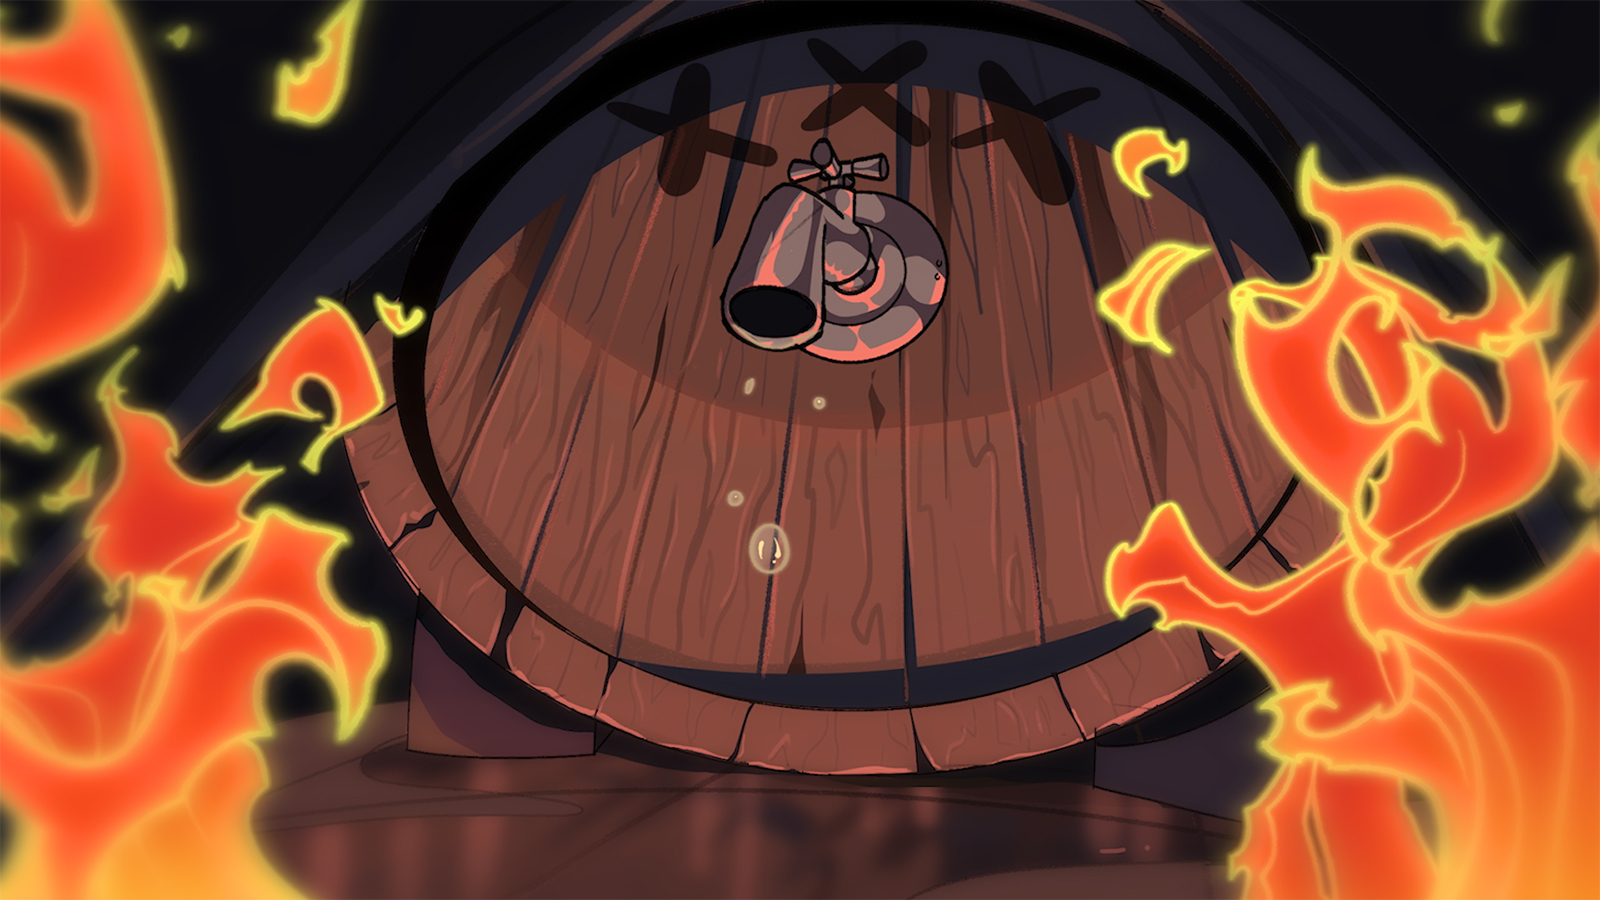 Flames approach a giant keg that drips a liquid.